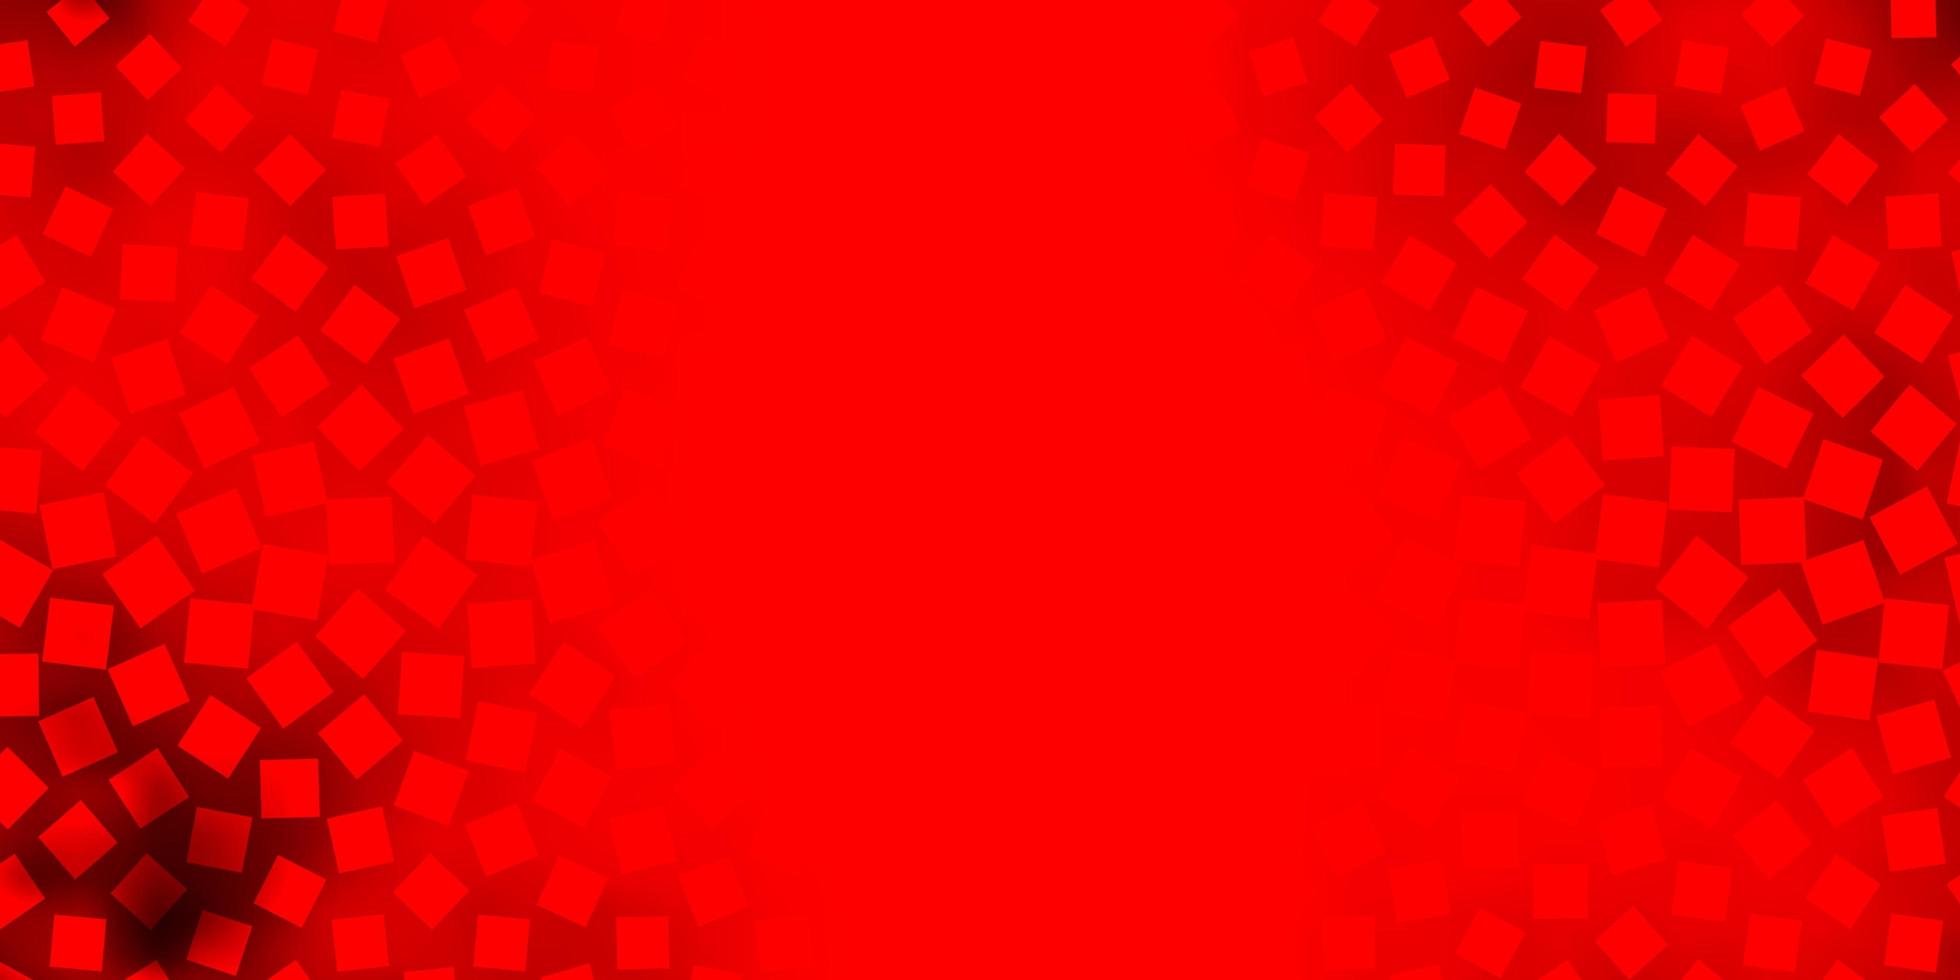 trama vettoriale rosso chiaro in stile rettangolare. design moderno con rettangoli in stile astratto. modello per spot pubblicitari, annunci.